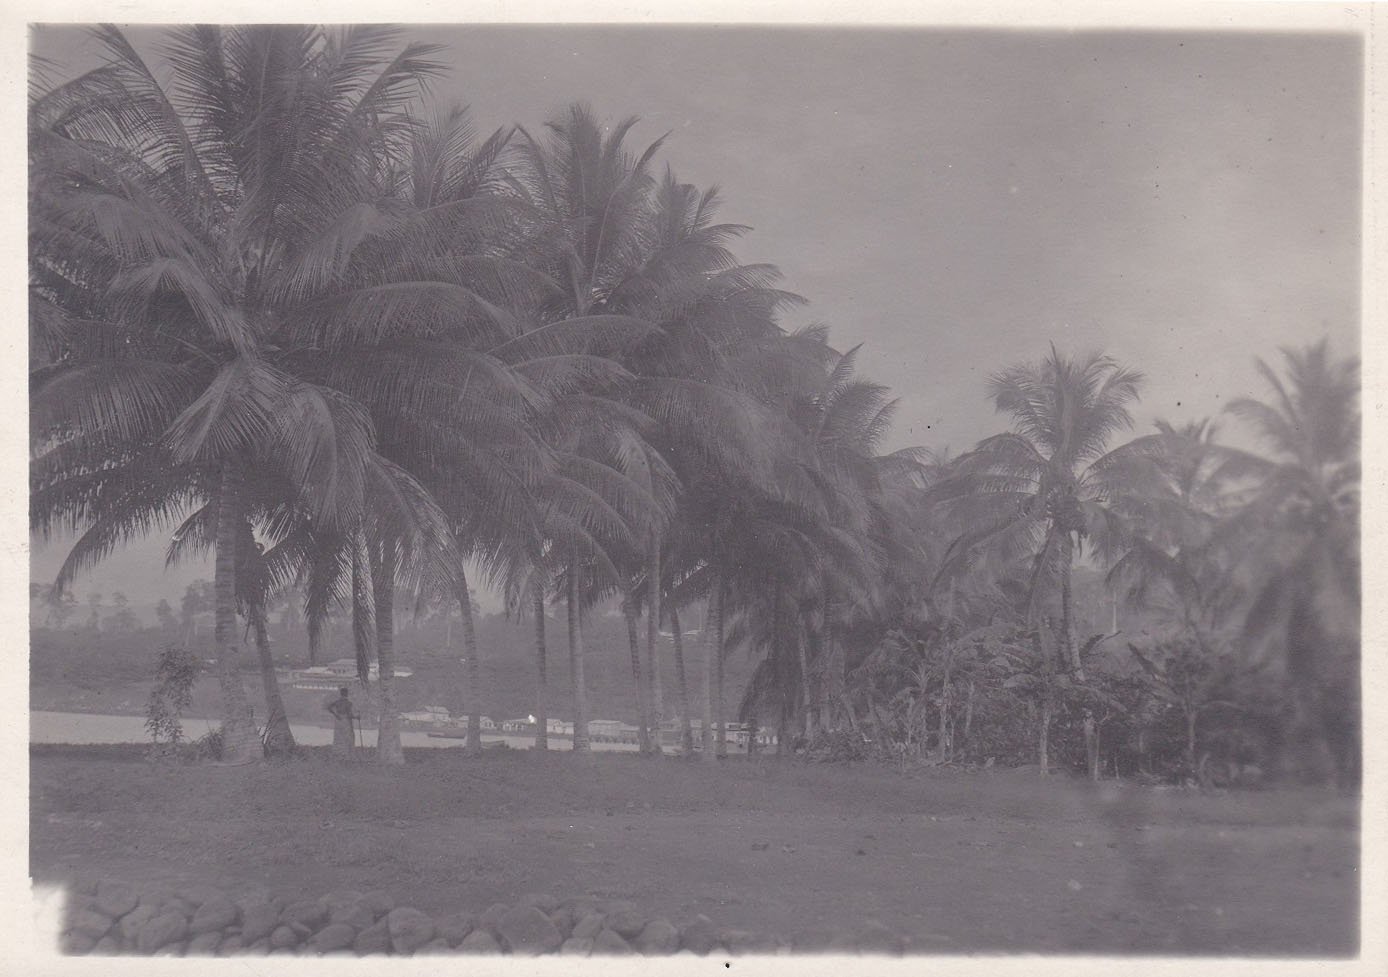   3 Original-Photographien von der Insel Fernando Poo während der spanischen Kolonialherrschaft. Historische Photographien der Insel mit konkreter Beschriftung in deutscher Sprache. 